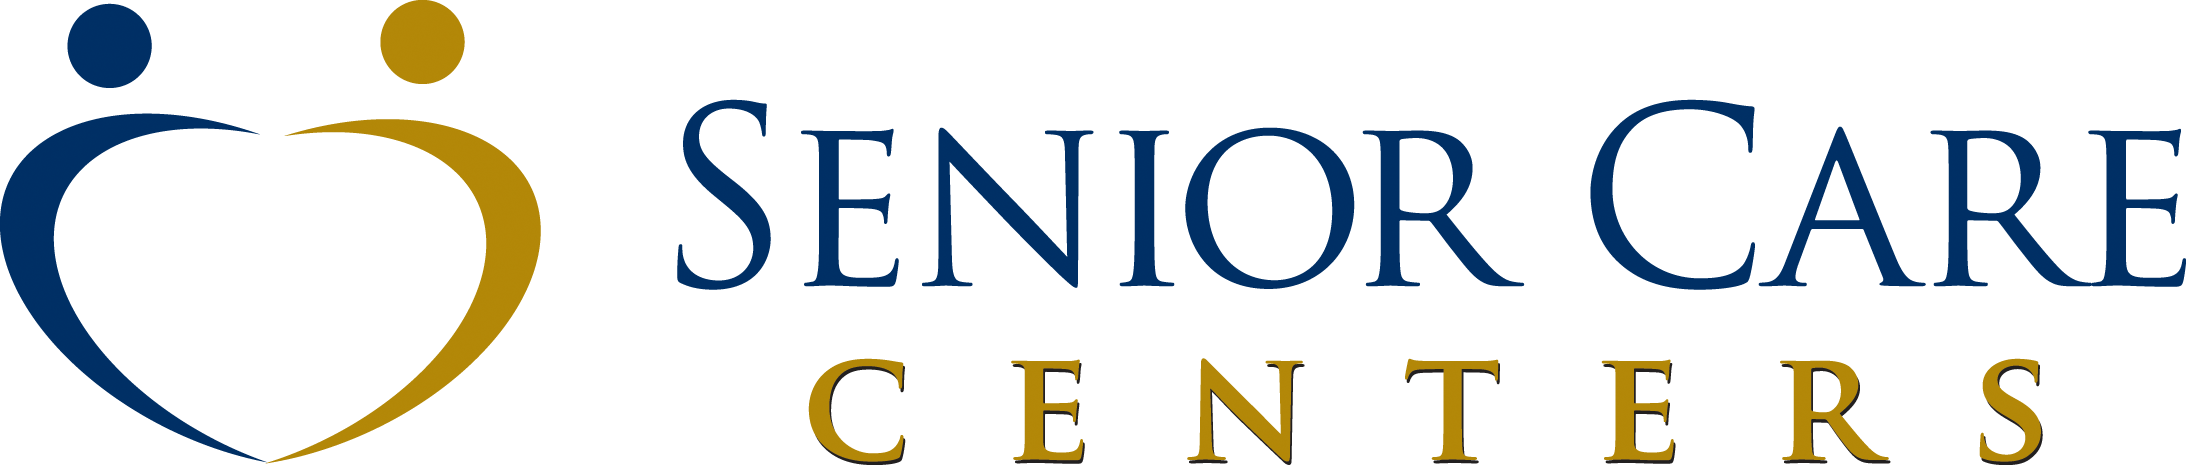 Seniorcarecenters Logo - Senior Care Centers | Skilled Nursing Homes, Assisted Living, and ...